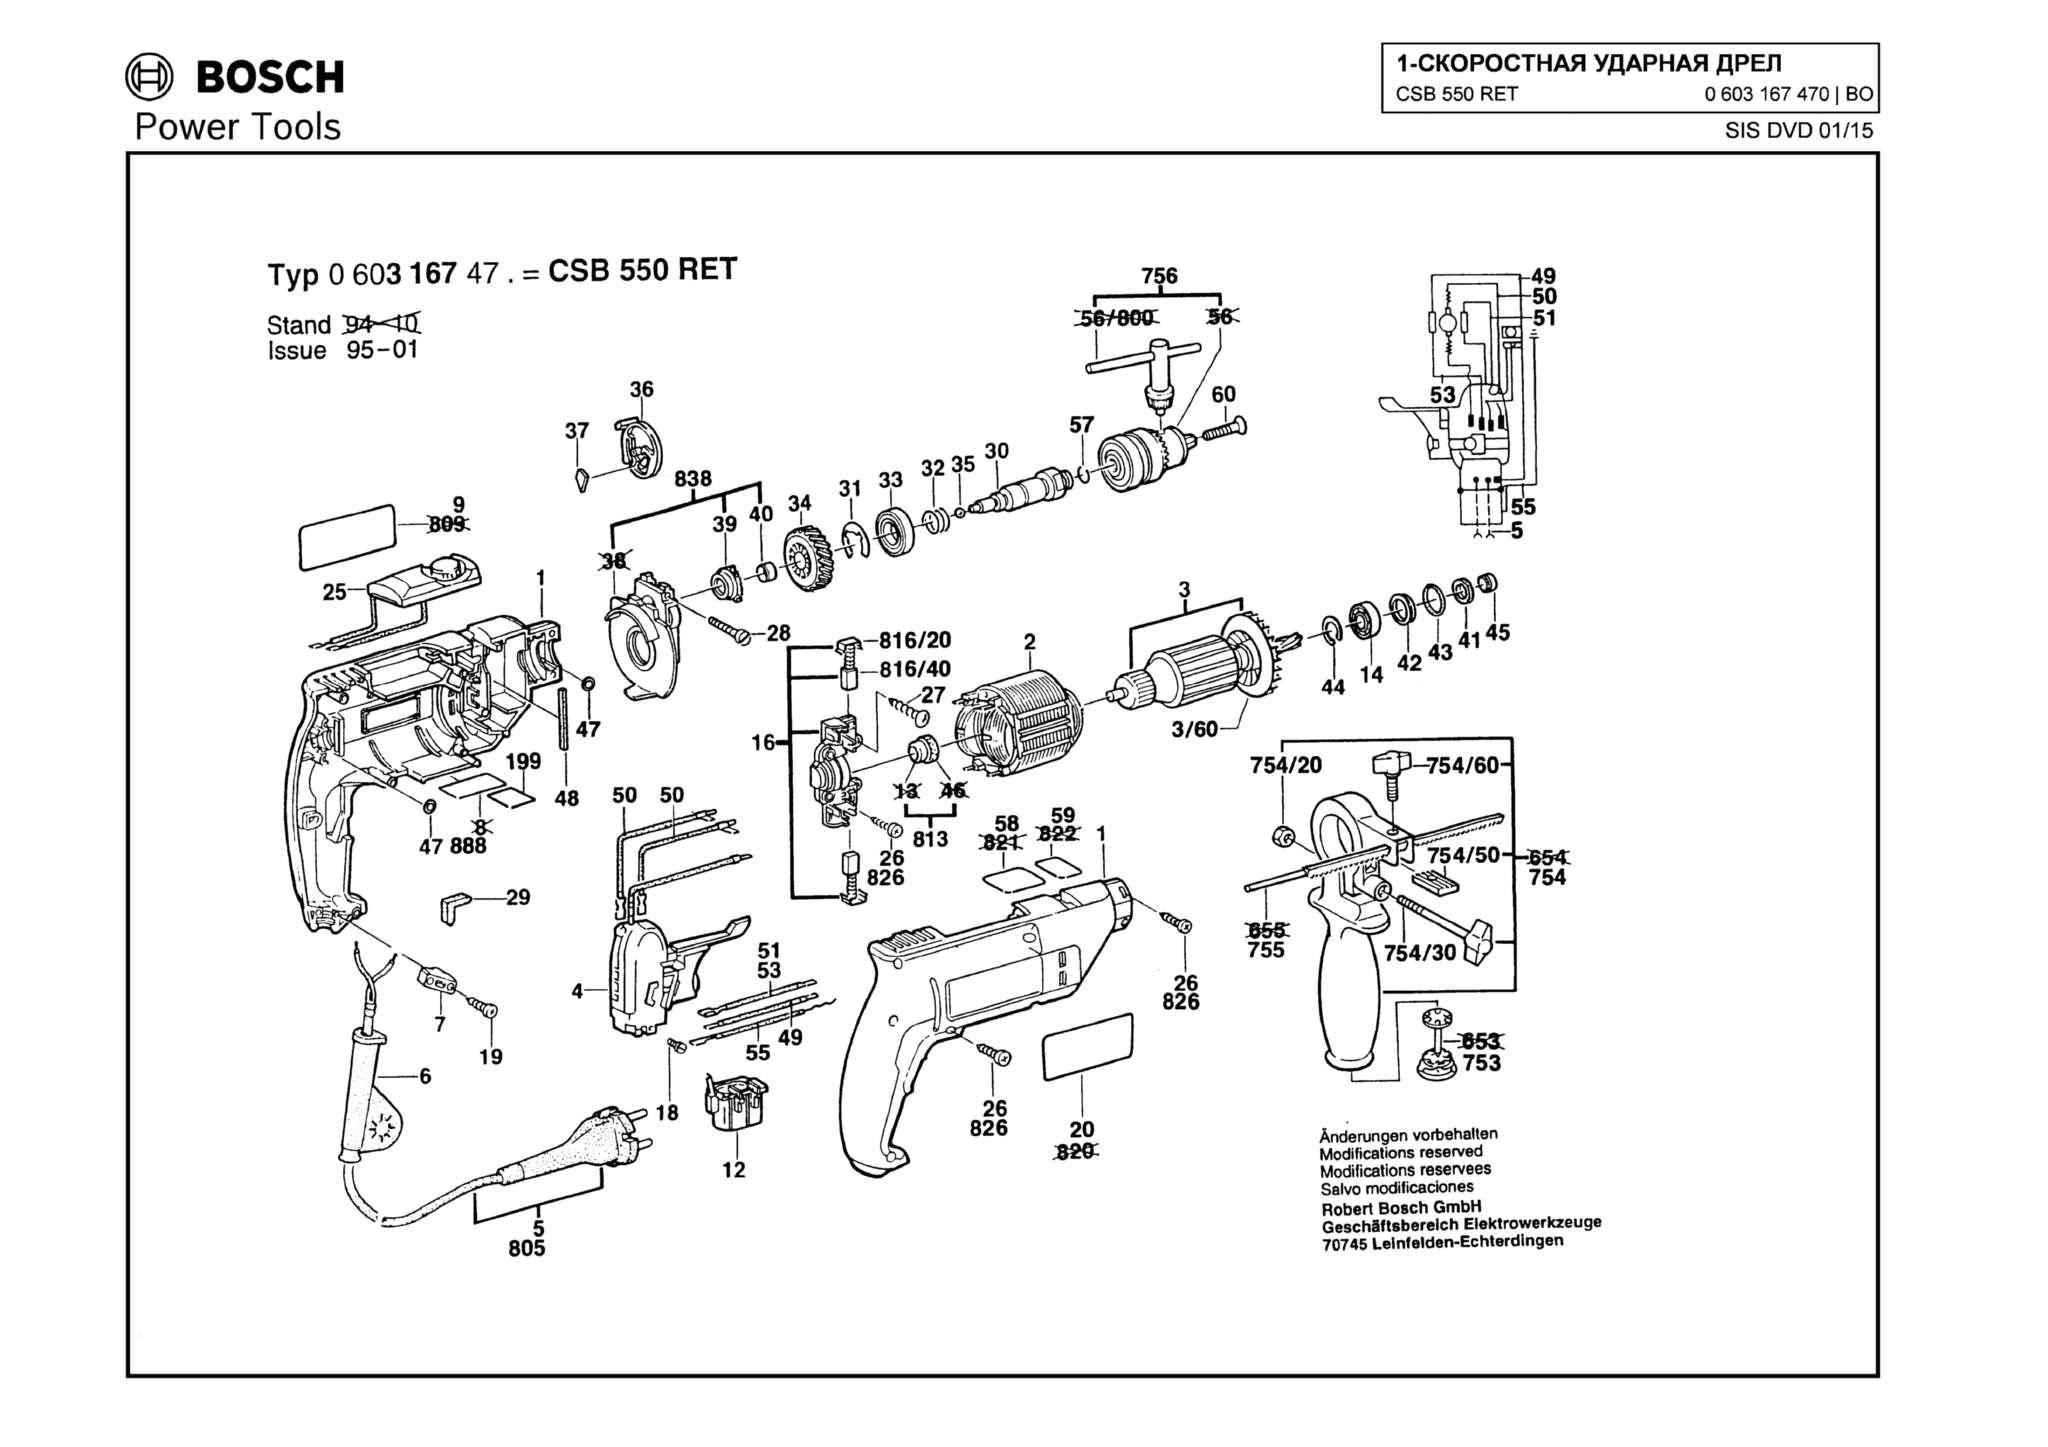 Запчасти, схема и деталировка Bosch CSB 550 RET (ТИП 0603167470)